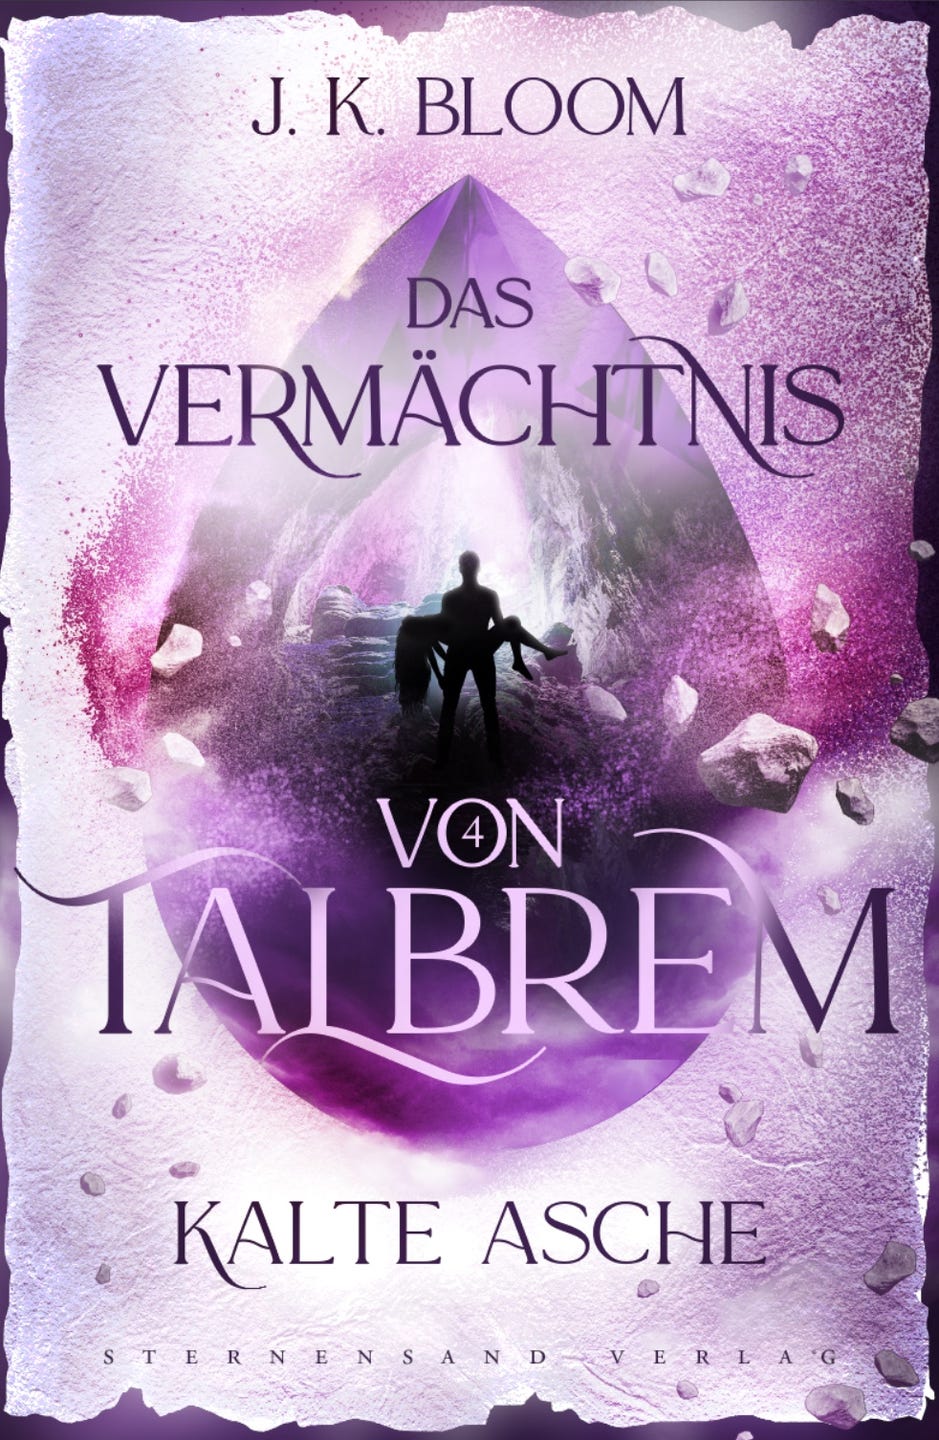 Bücherblog. Rezension. Buchcover. Das Vermächtnis von Talbrem - Kalte Asche (Band 4) von J. K. Bloom. Urban Fantasy. Sternensand Verlag.